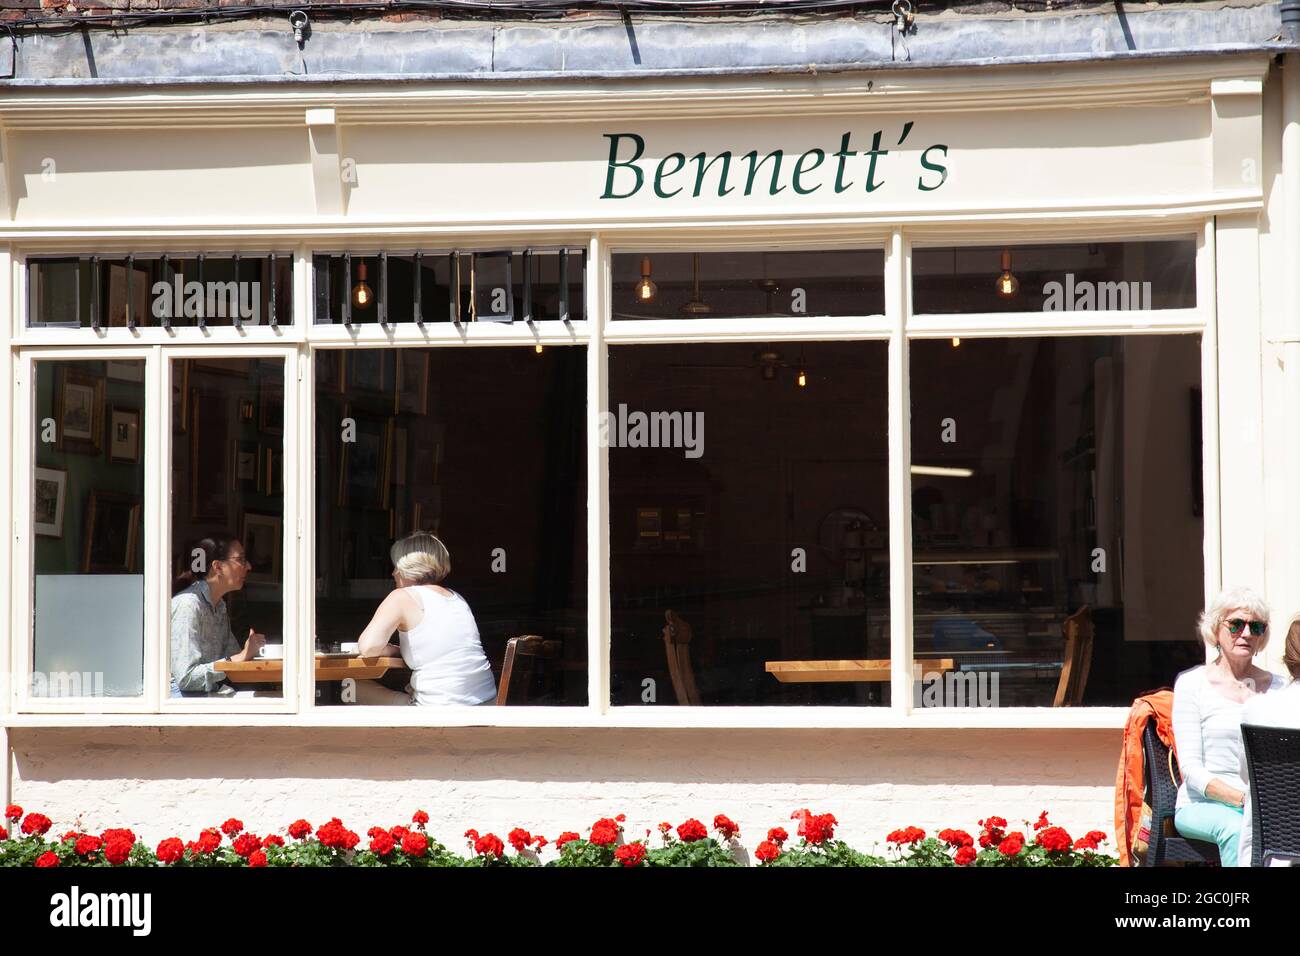 Bennett's Cafe on High Petergate in York, UK Stock Photo